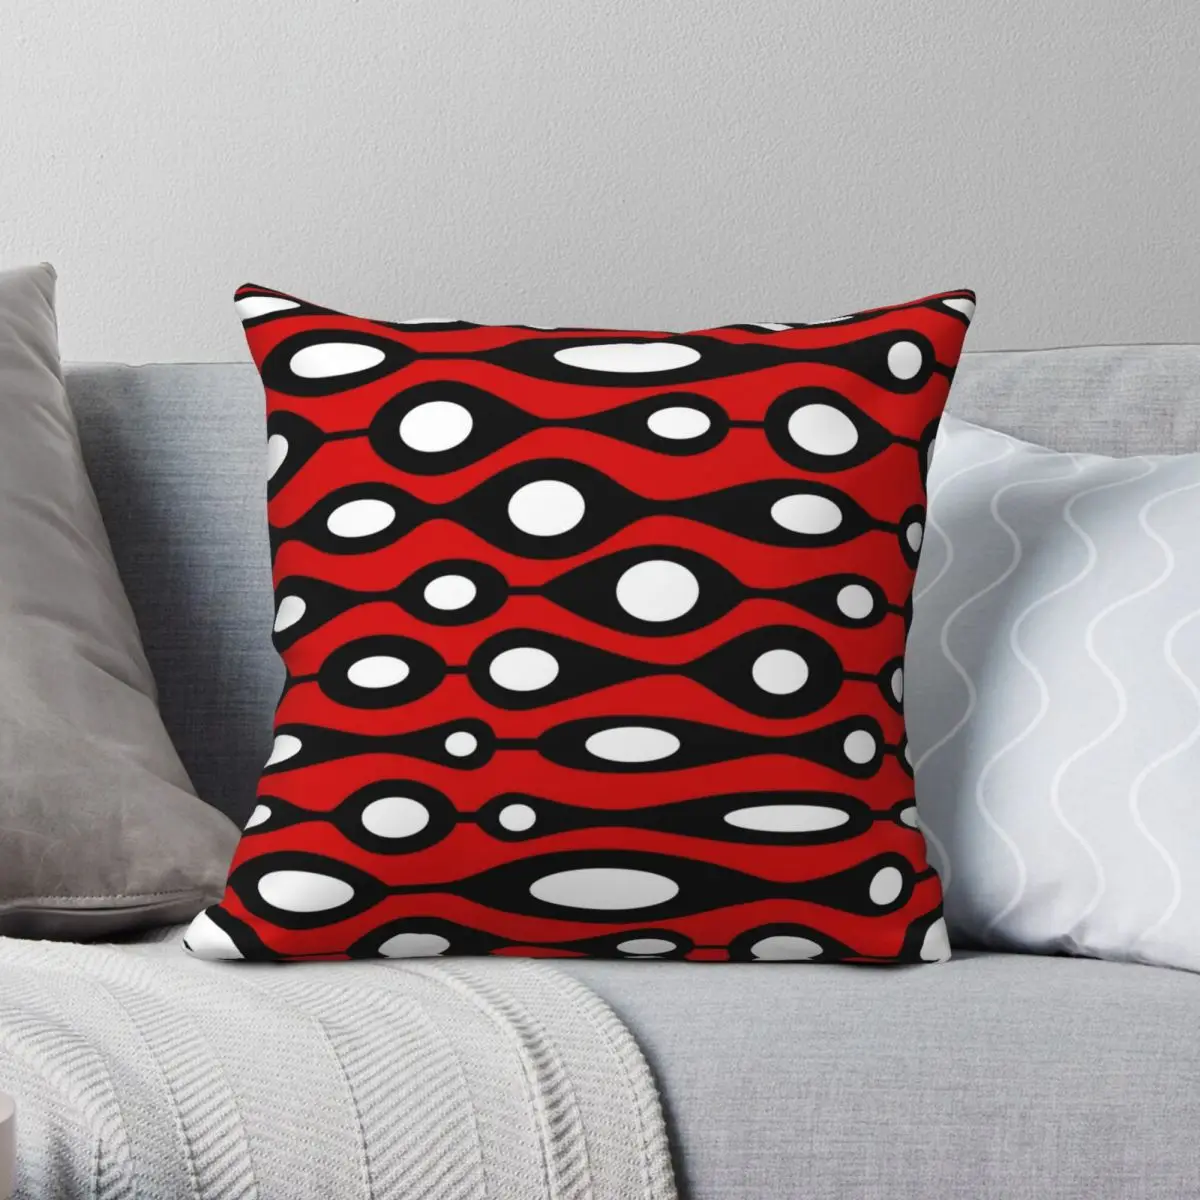 

Красно-черная плазменная квадратная наволочка Groovy, Полиэстеровая льняная бархатная креативная Декоративная Подушка на молнии, искусственная подушка для дивана, для сидения, 18 дюймов